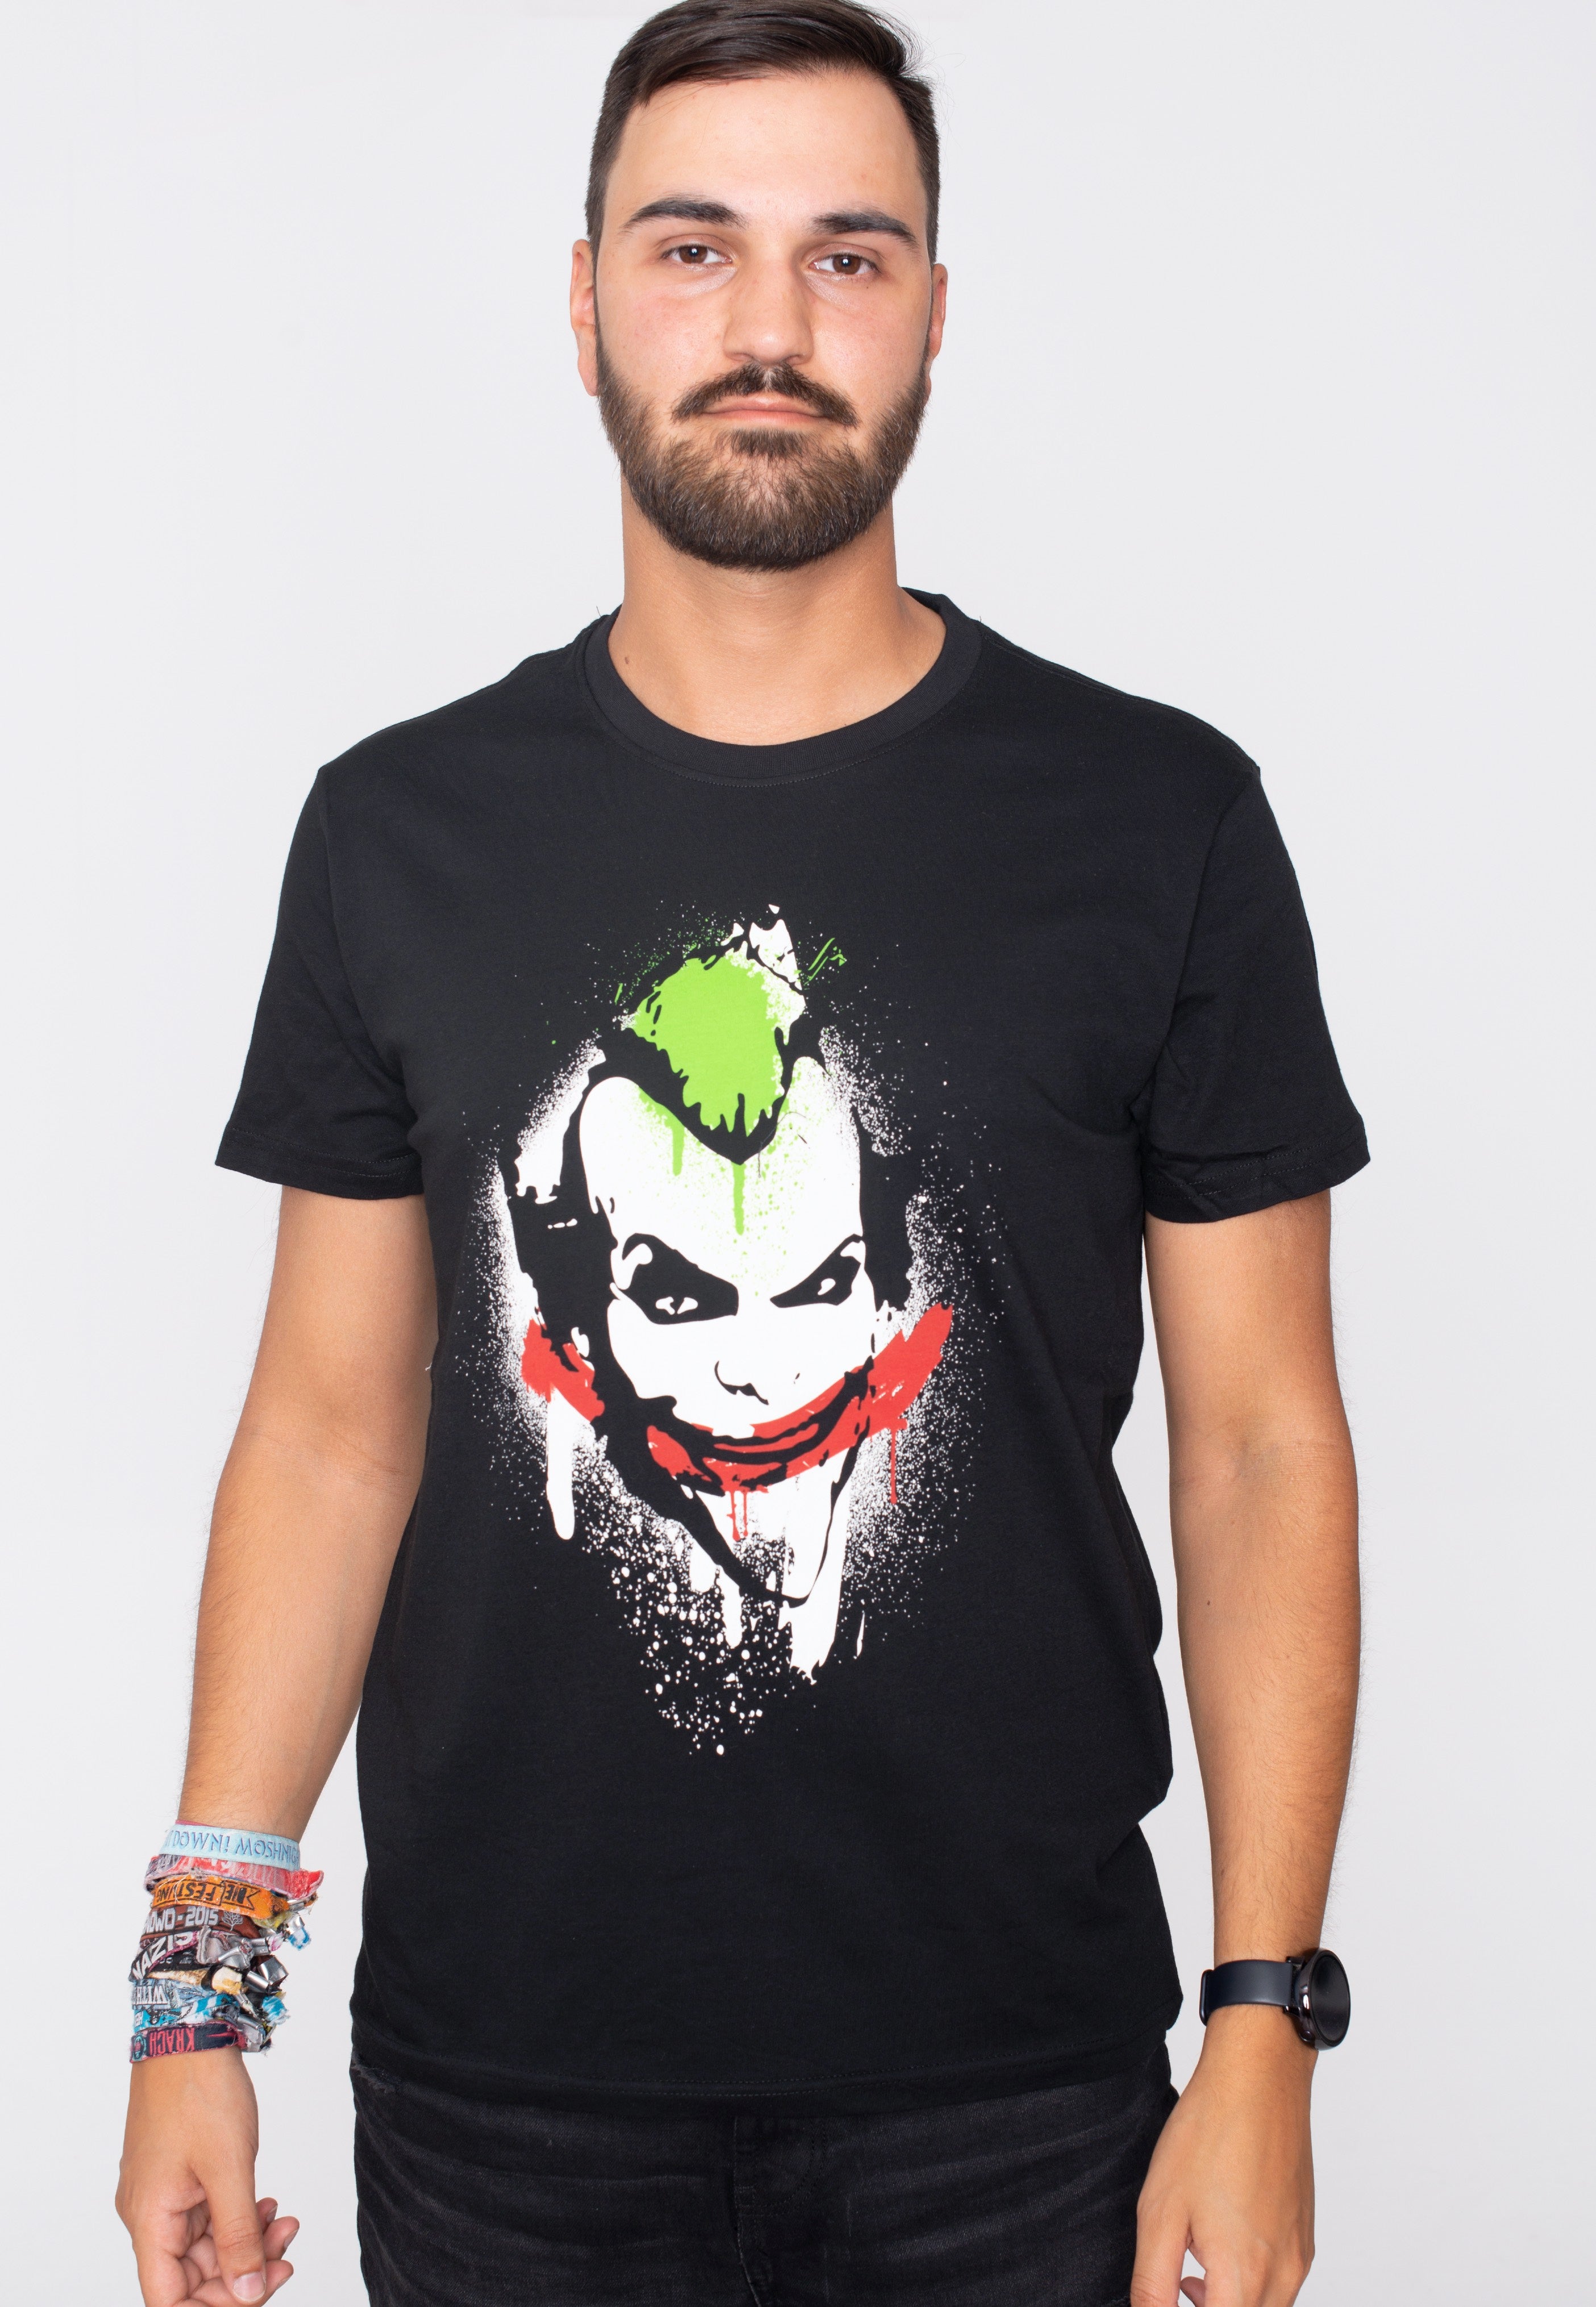 Joker - The Joker - T-Shirt | Men-Image